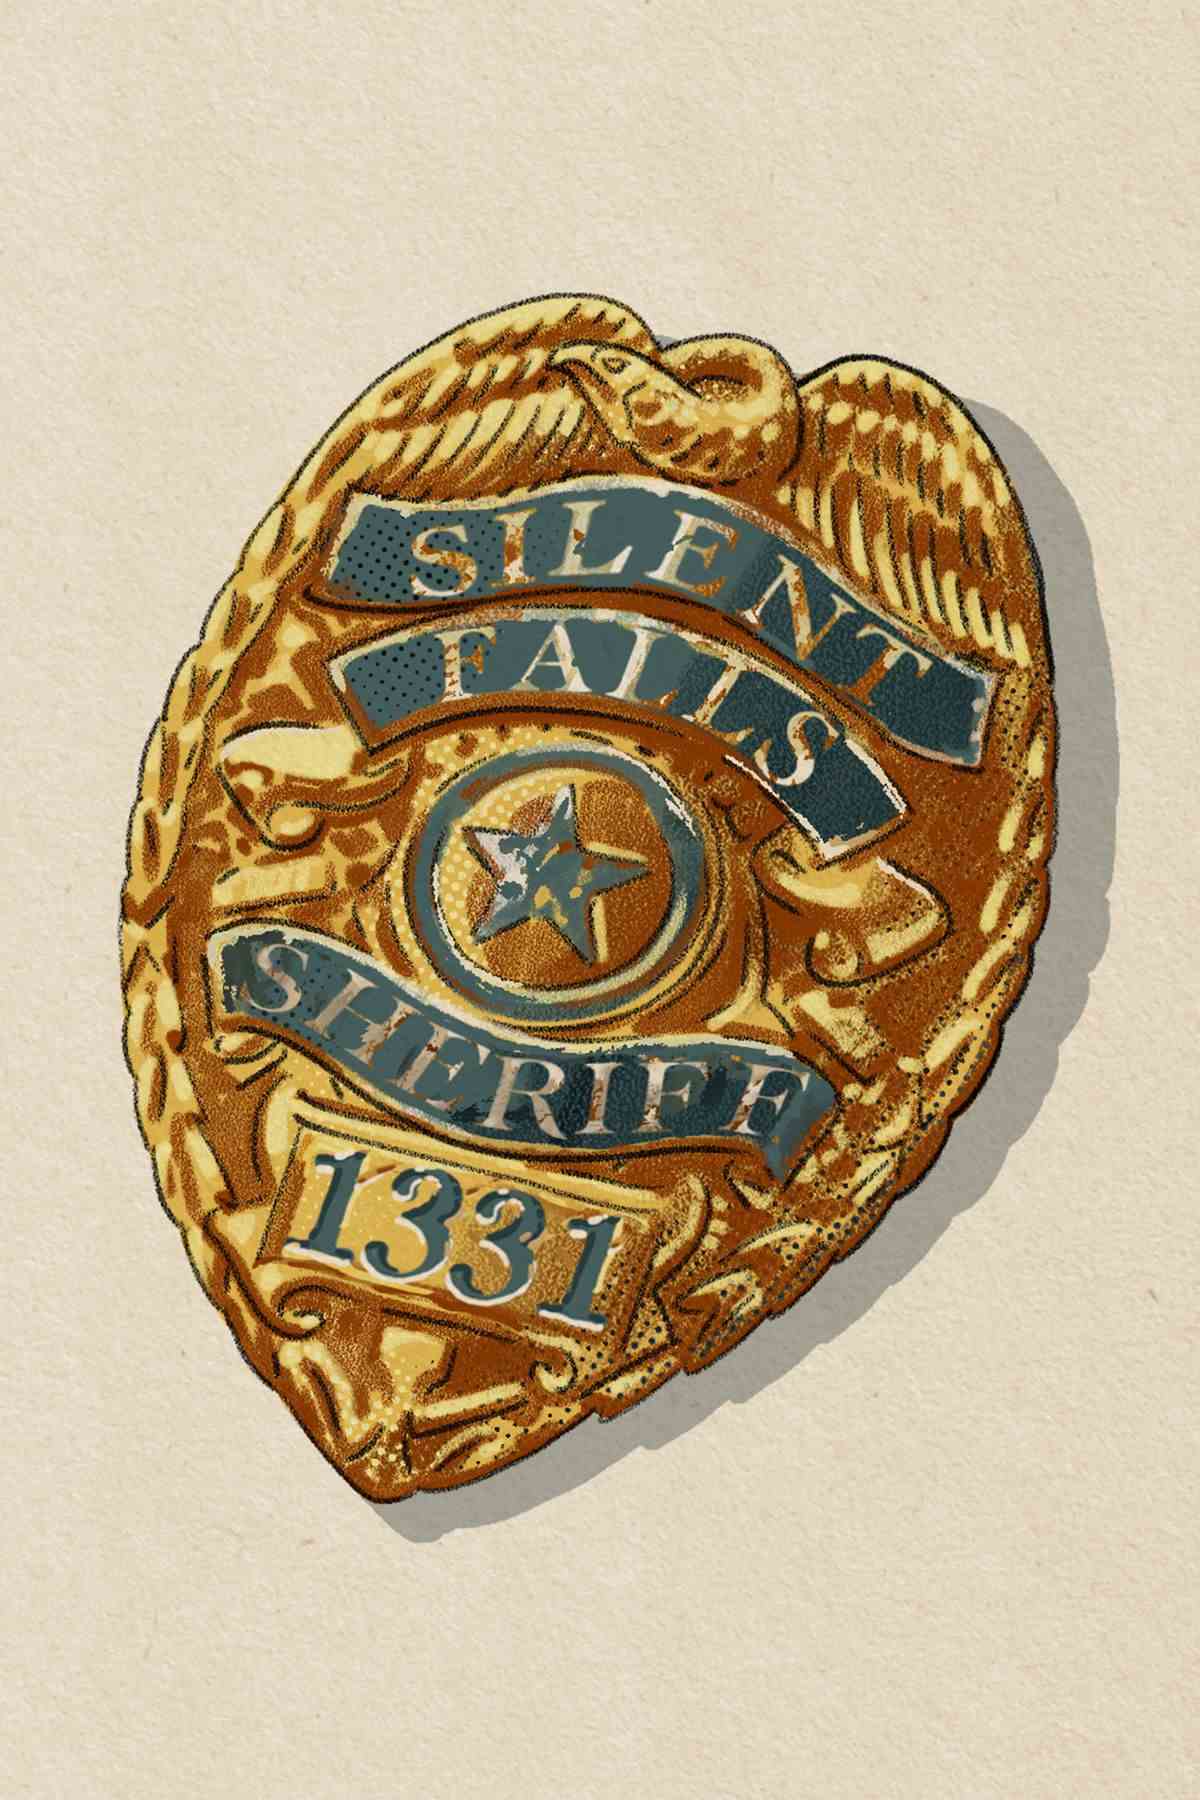 Un insigne du département du shérif de Silent Falls, numéro 1221. Or avec une étoile au milieu.